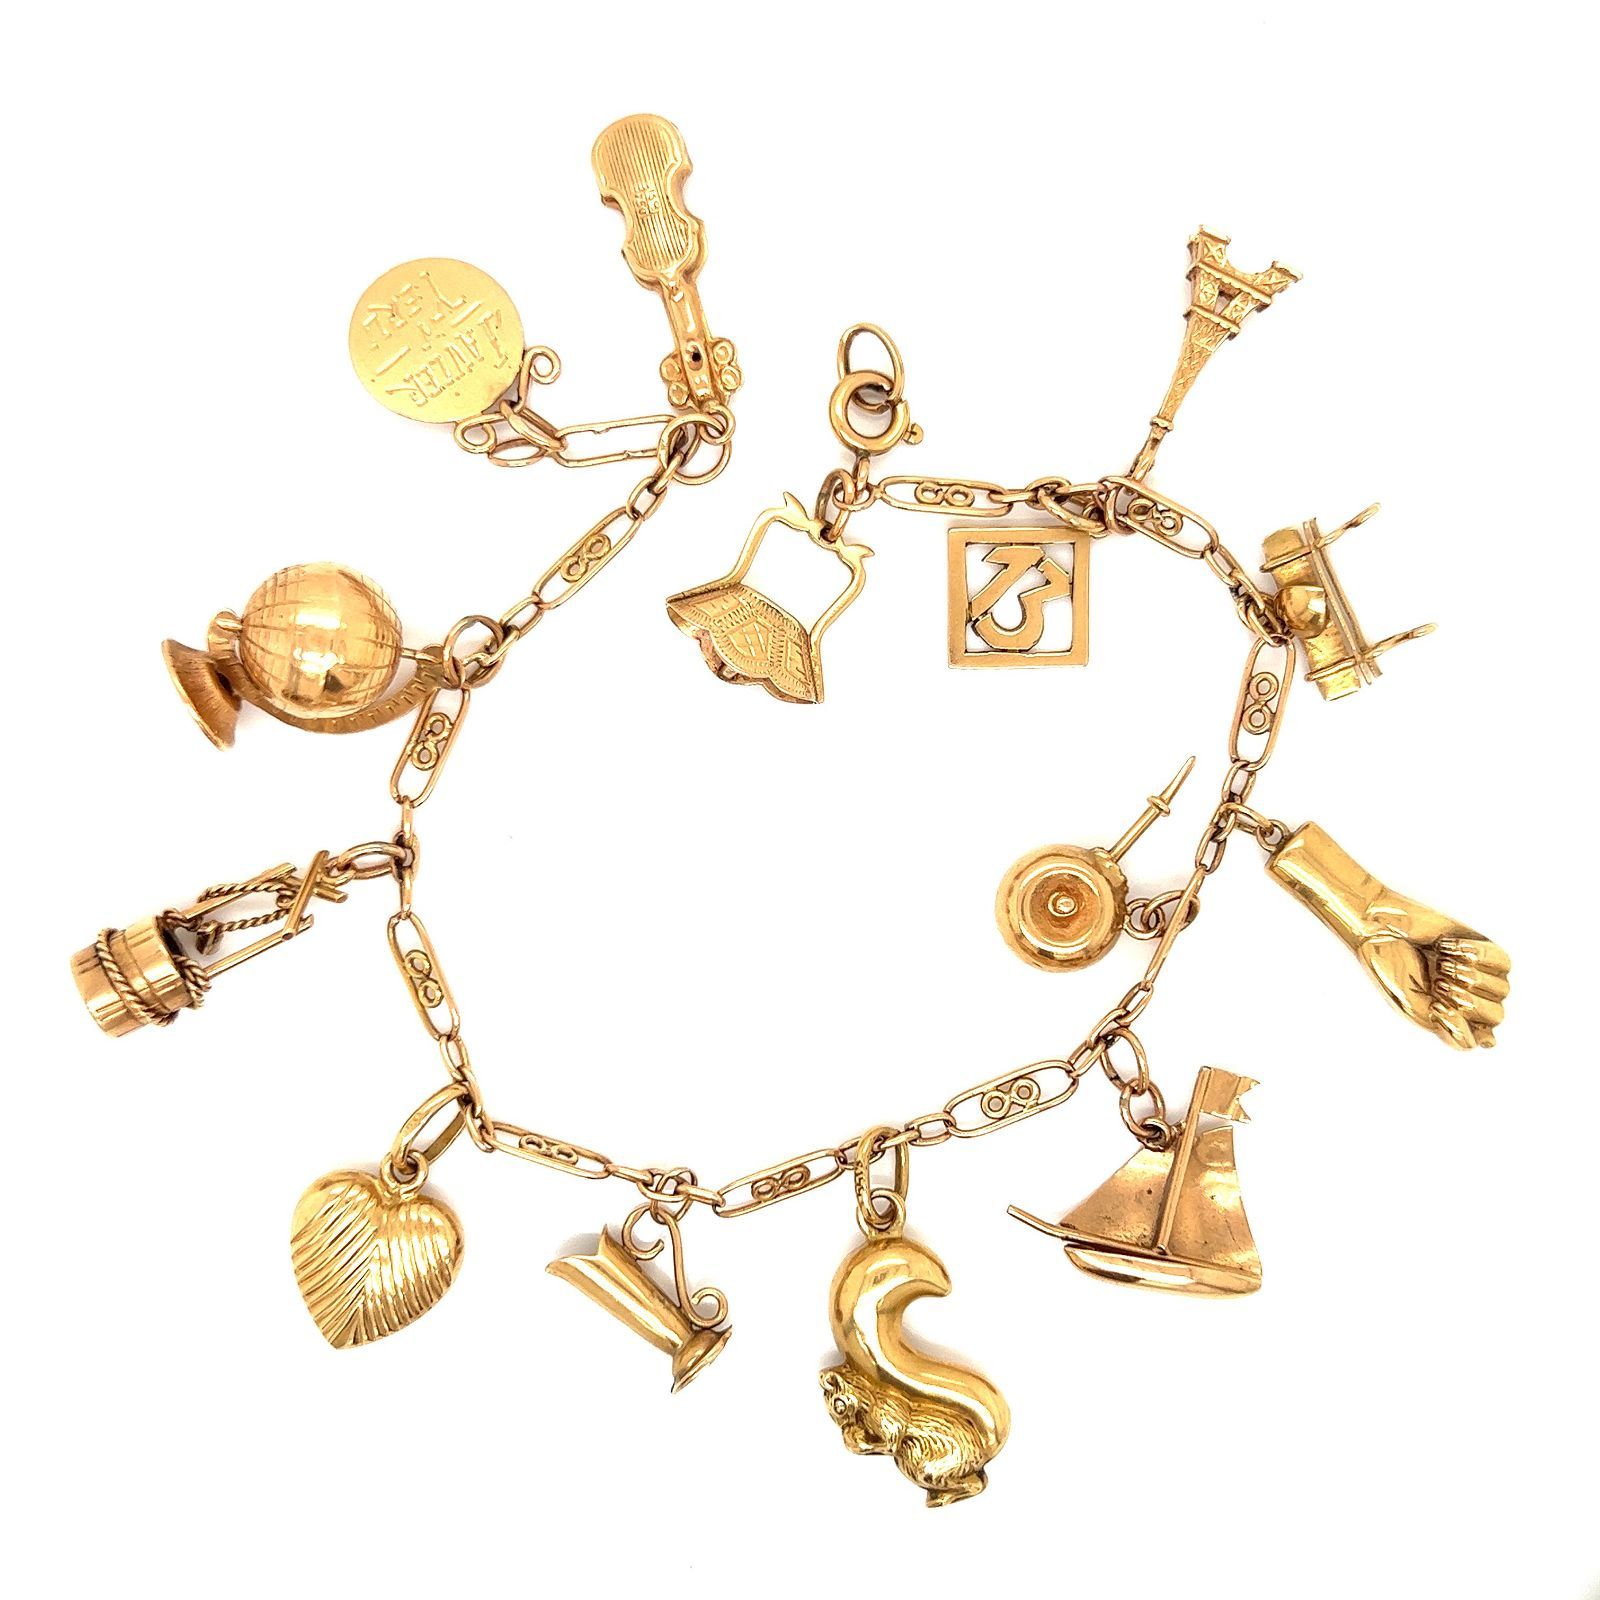 18k Charm Bracelet Oro rosa 18 carati Peso 23,64 g Bracciale Charm 8,5 "x1,16"